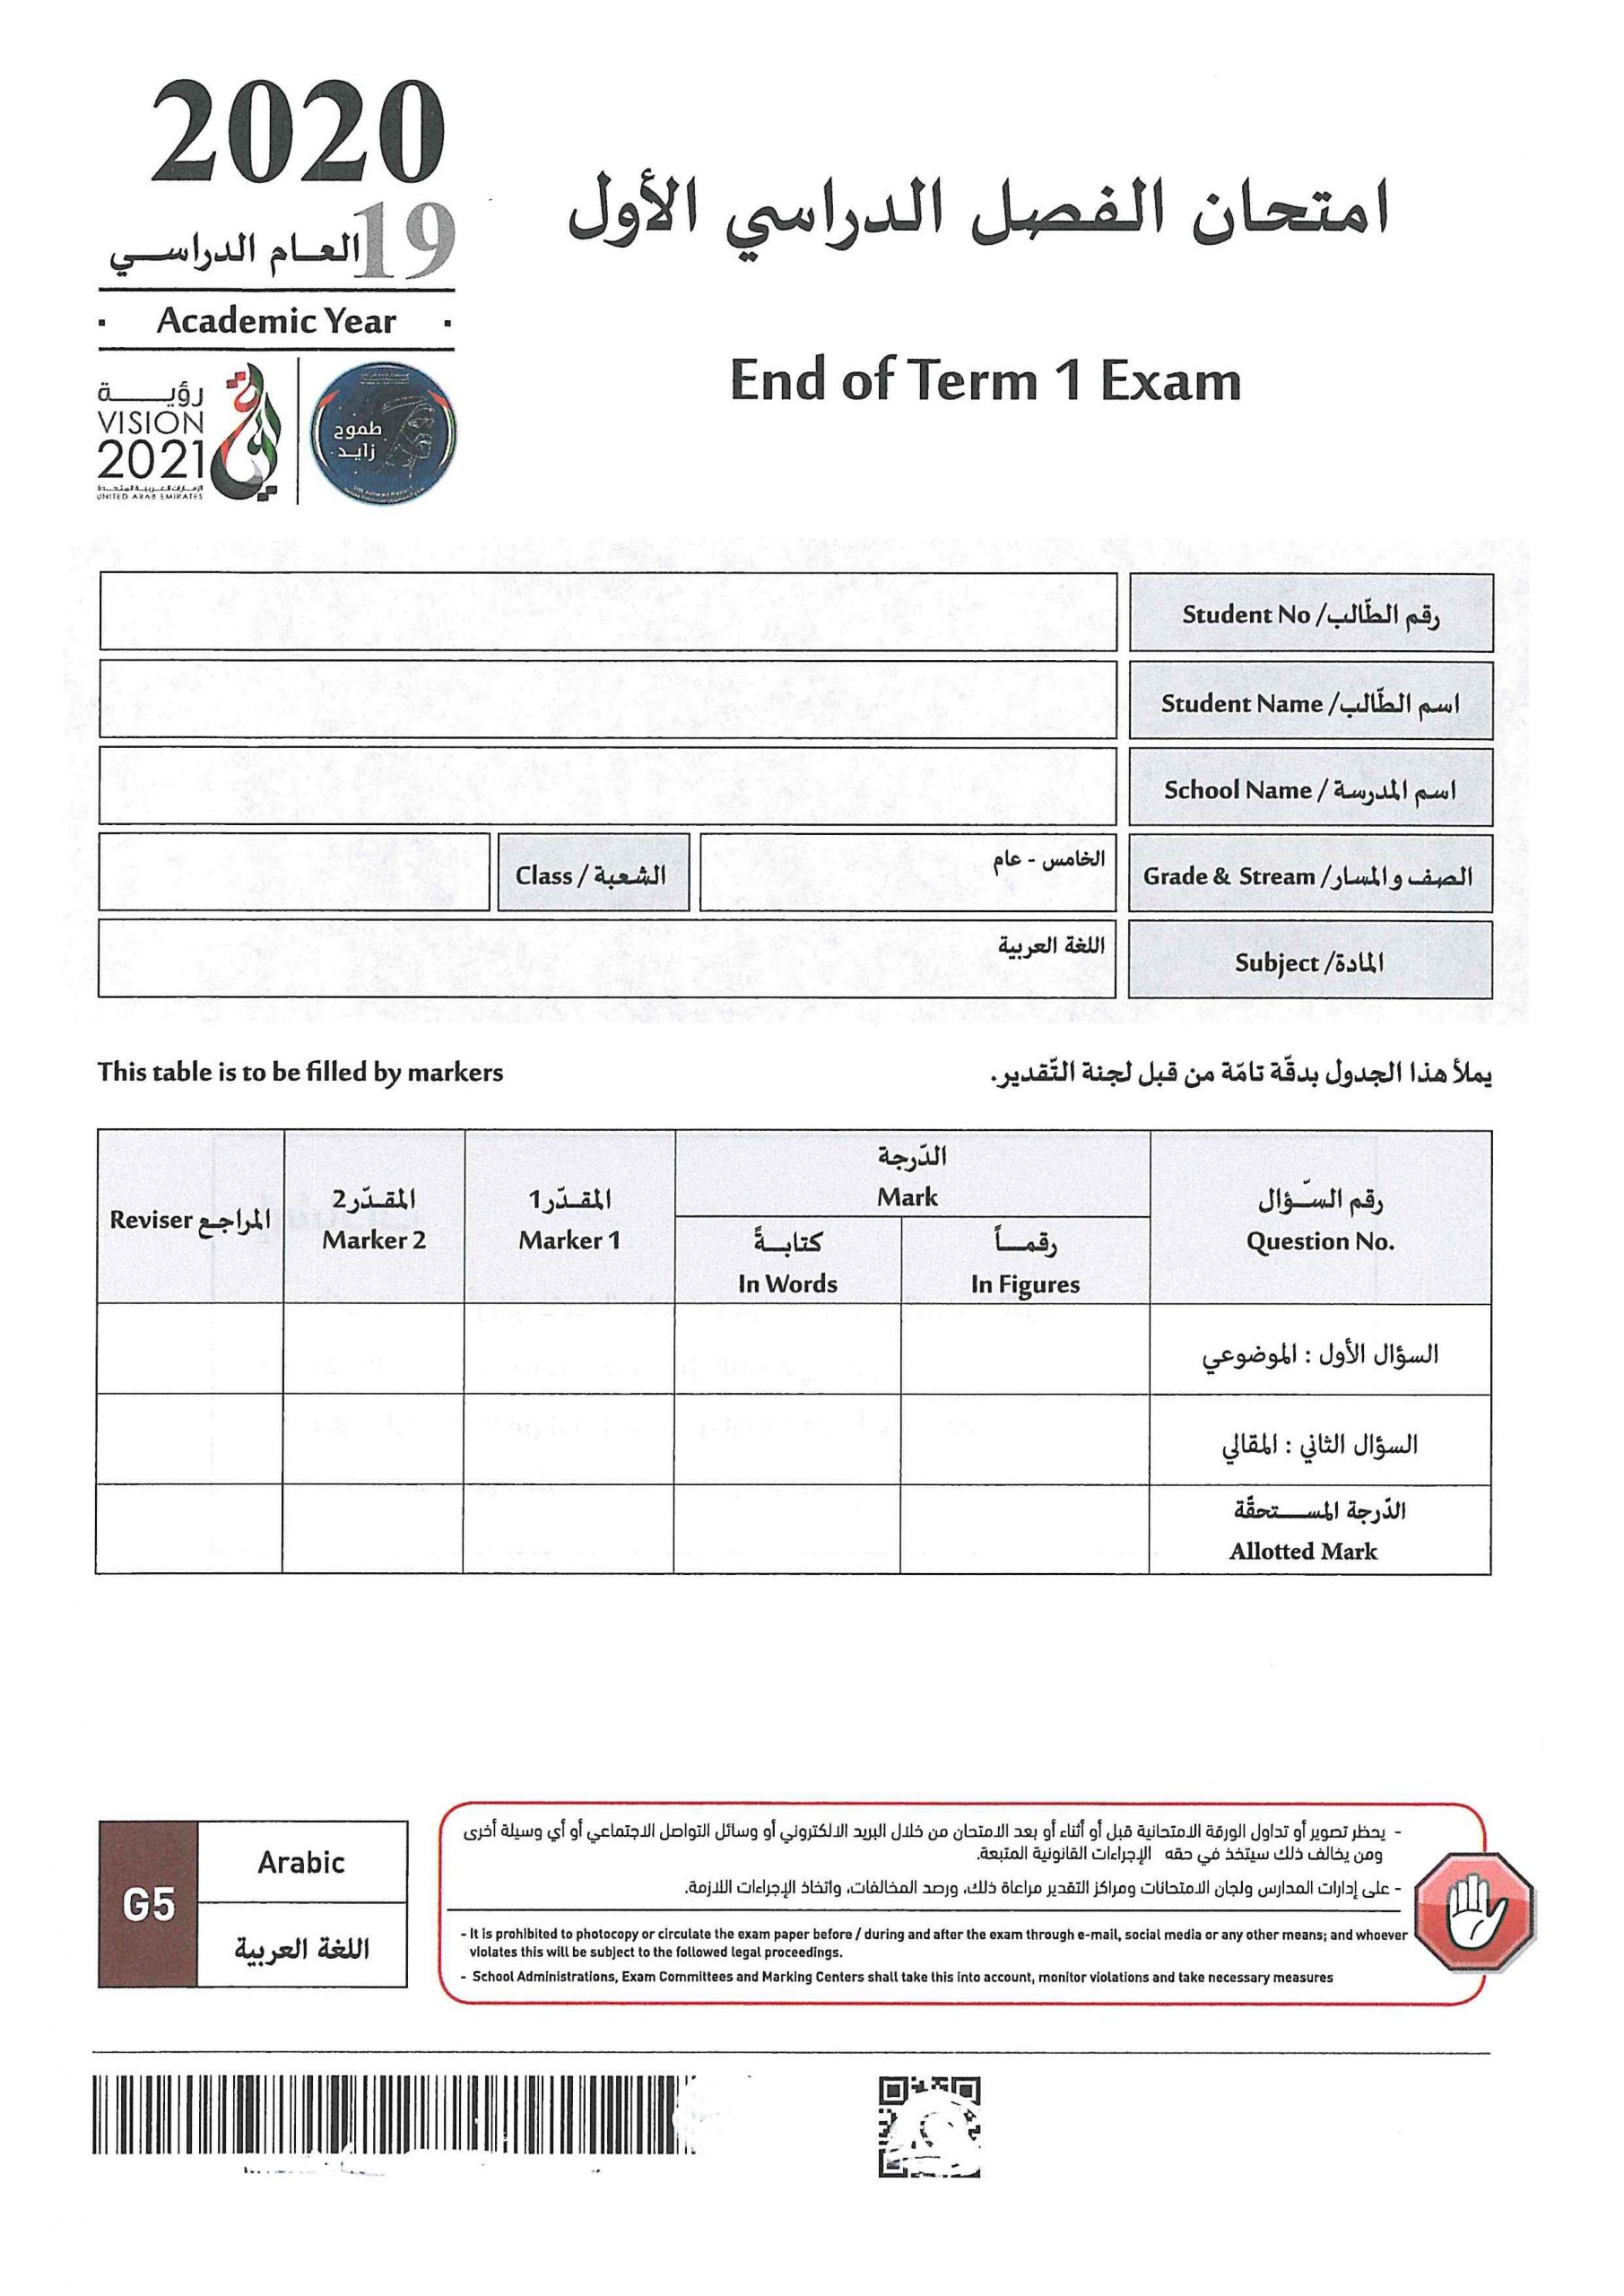 امتحان نهاية الفصل الدراسي الاول 2019-2020 الصف الخامس مادة اللغة العربية